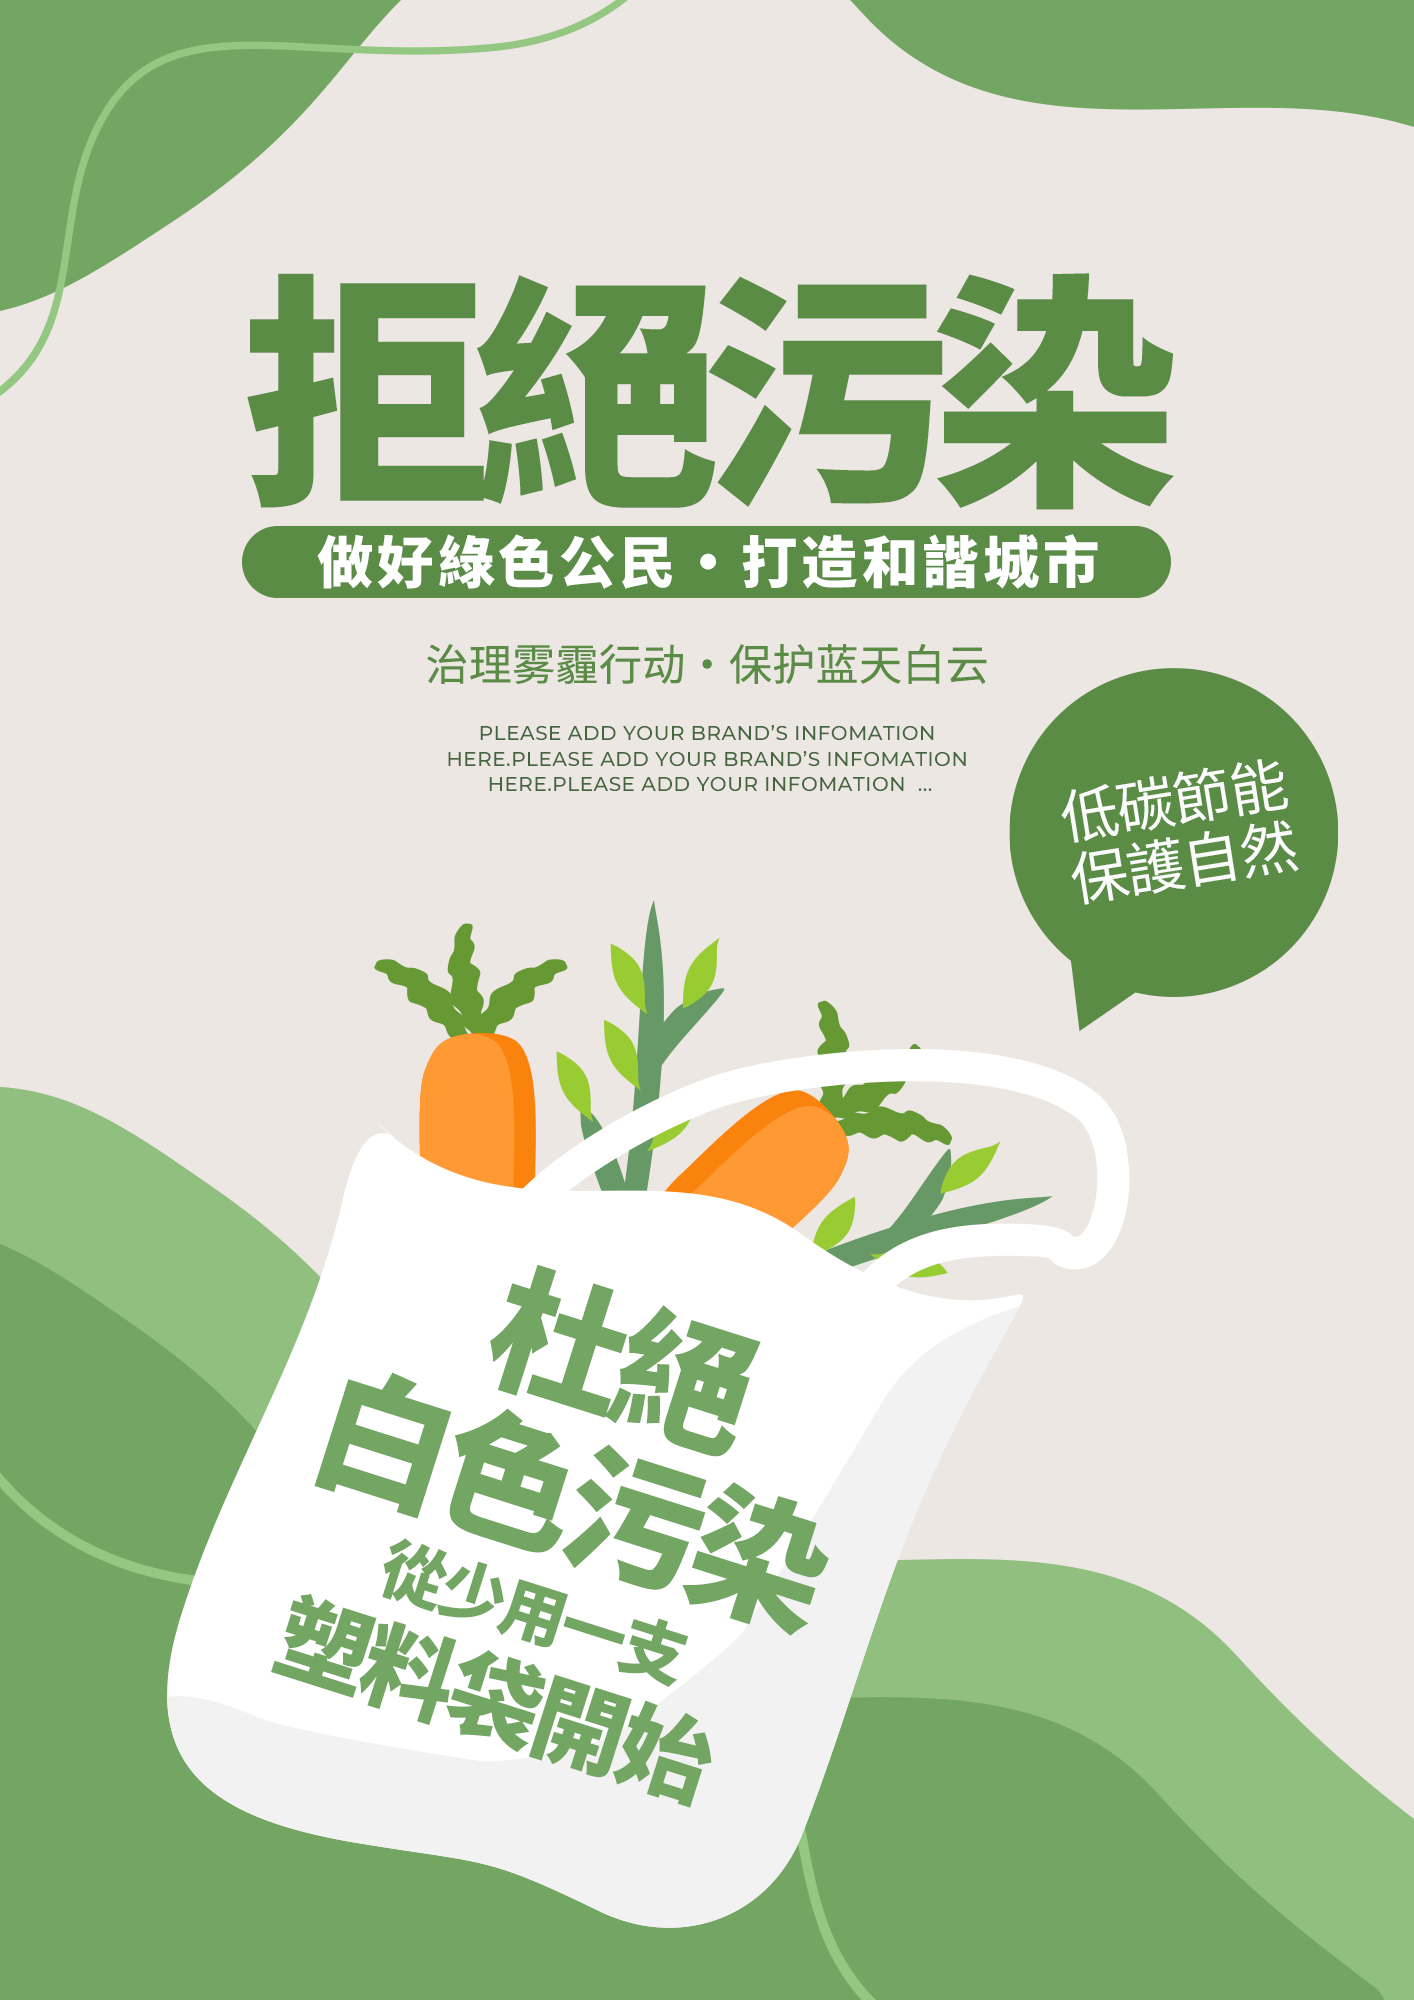 拒绝白色污染绿色环保零污染宣传海报图片